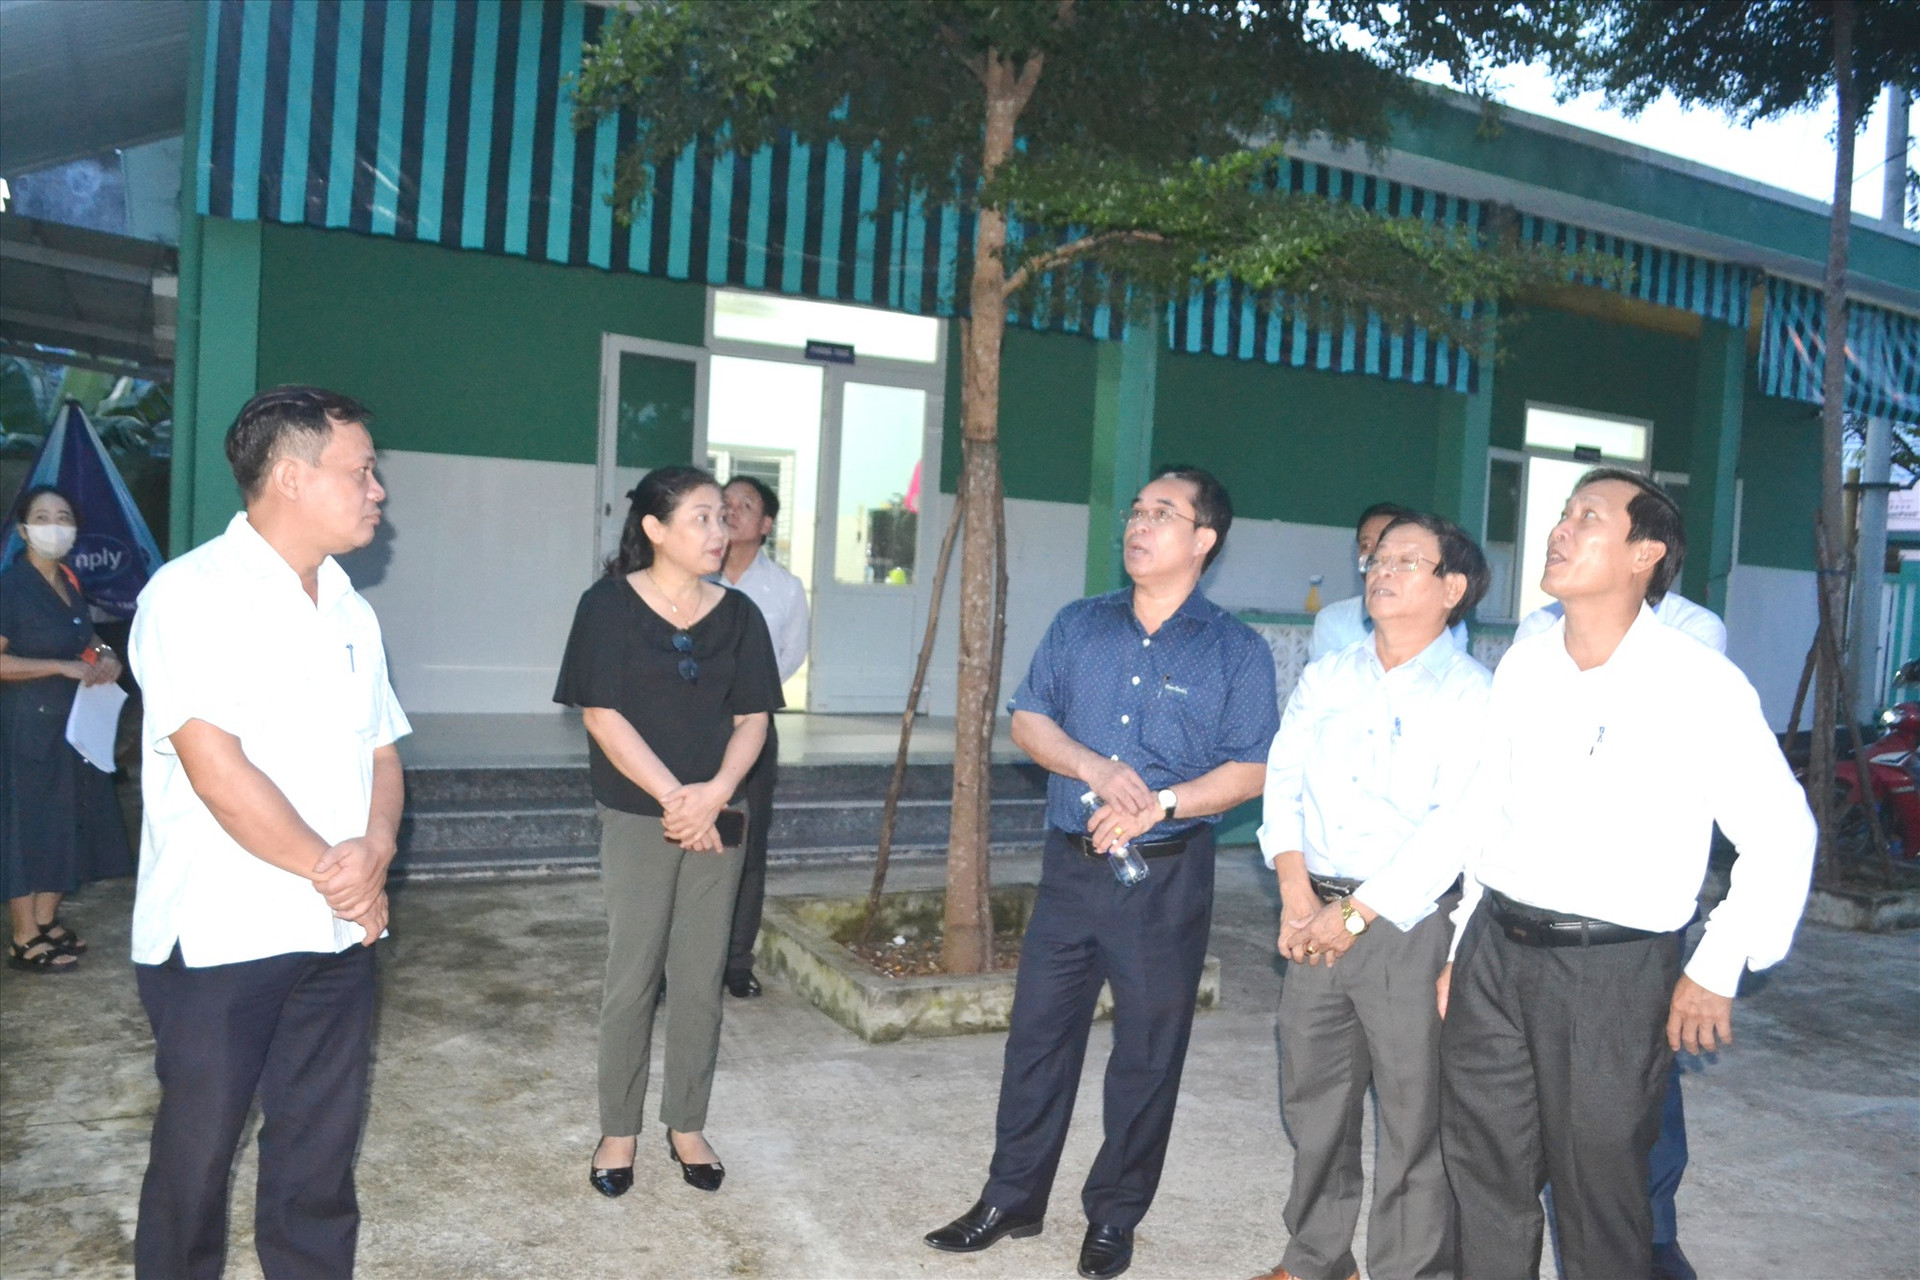 Đồng chí Trần Anh Tuấn (đứng thứ 3 từ phải sang) nghe địa phương báo cáo hiện trạng Trạm Y tế thị trấn Ái Nghĩa. Ảnh: C.T